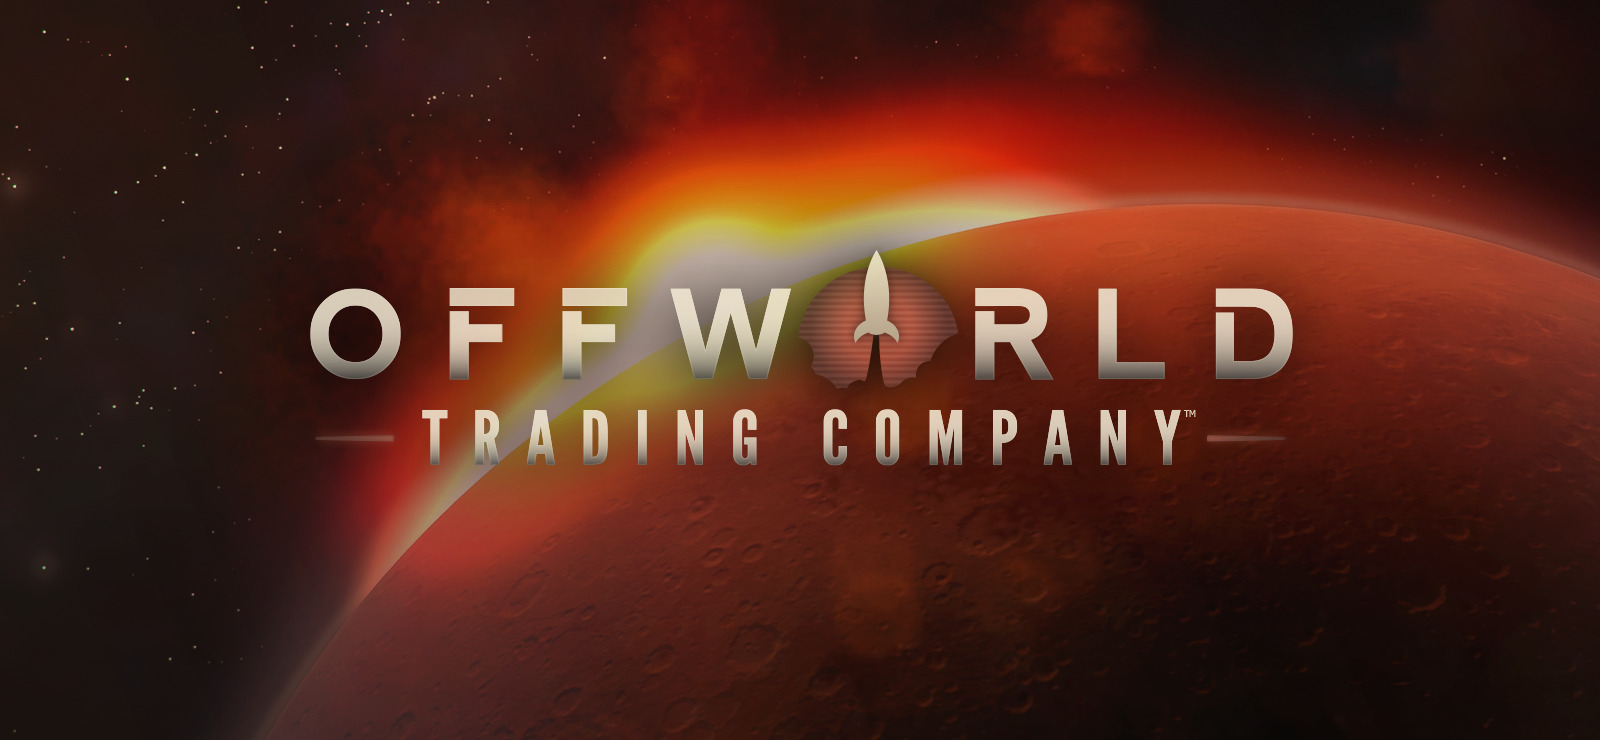 offworld trading company sign non disclosure